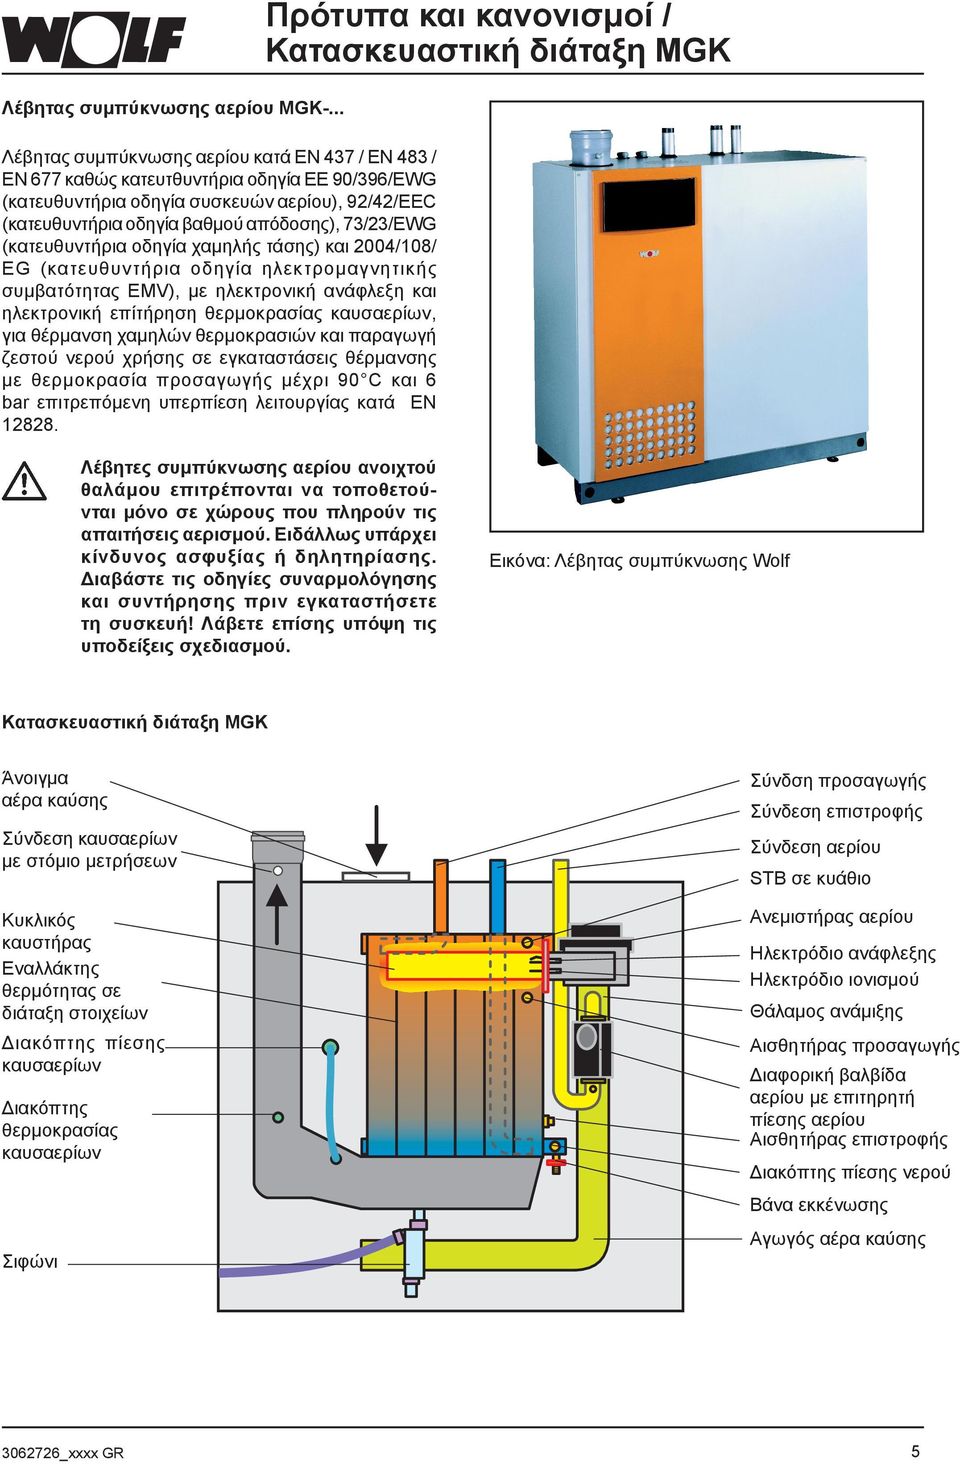 (κατευθυντήρια οδηγία χαμηλής τάσης) και 004/108/ EG (κατευθυντήρια οδηγία ηλεκτρομαγνητικής συμβατότητας EMV), με ηλεκτρονική ανάφλεξη και ηλεκτρονική επίτήρηση θερμοκρασίας καυσαερίων, για θέρμανση